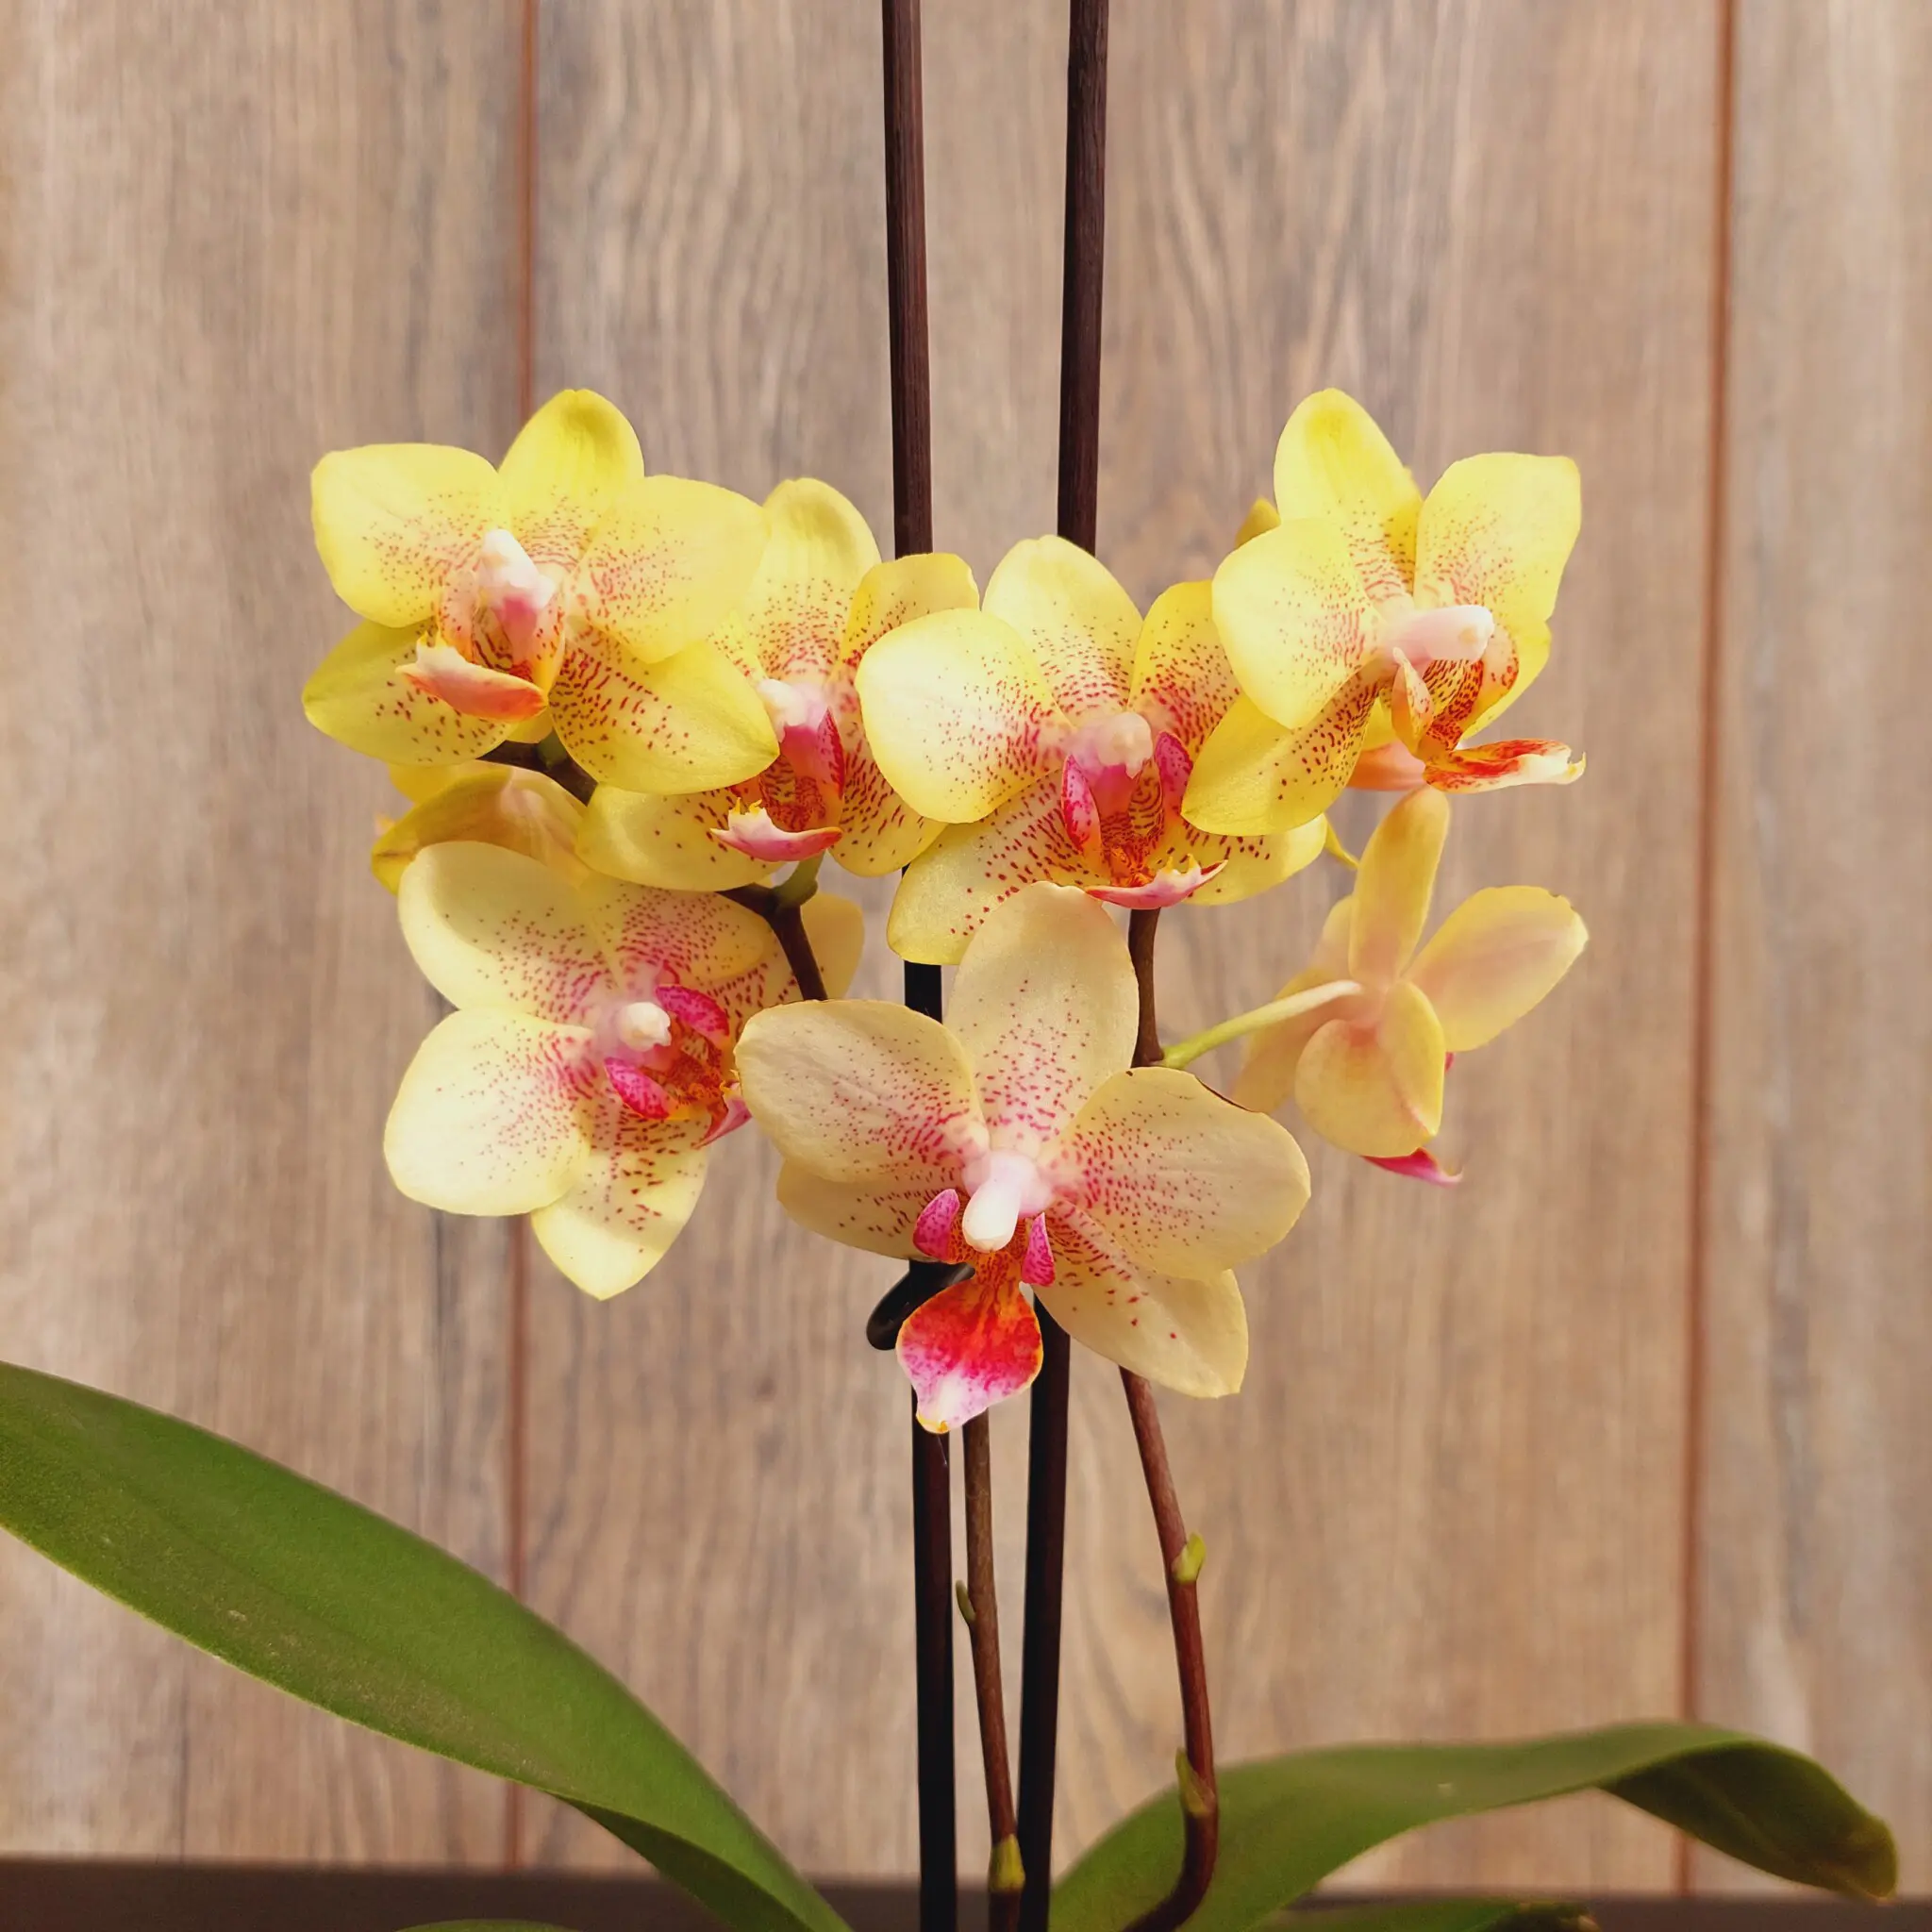 Orquídeas Mini con Flor Phalaenopsis en Macetero de Vidrio | Encactus Floral